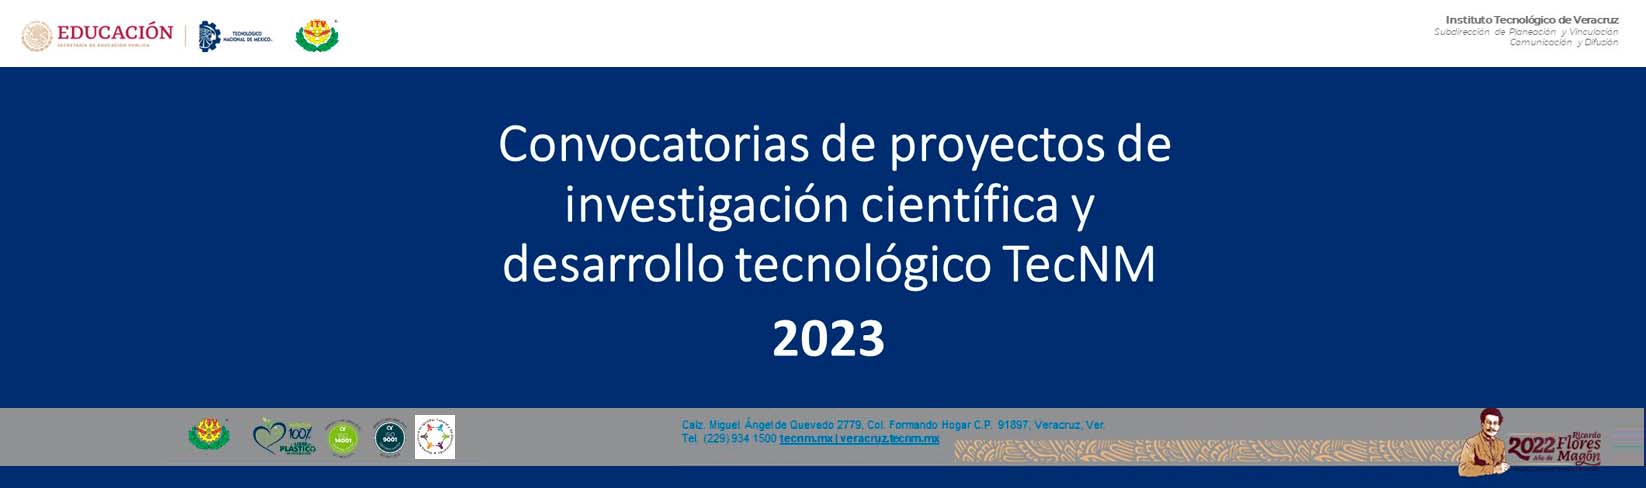 Convocatorias de Proyectos de Investigación Científica y Desarrollo Tecnológico TecNM 2023